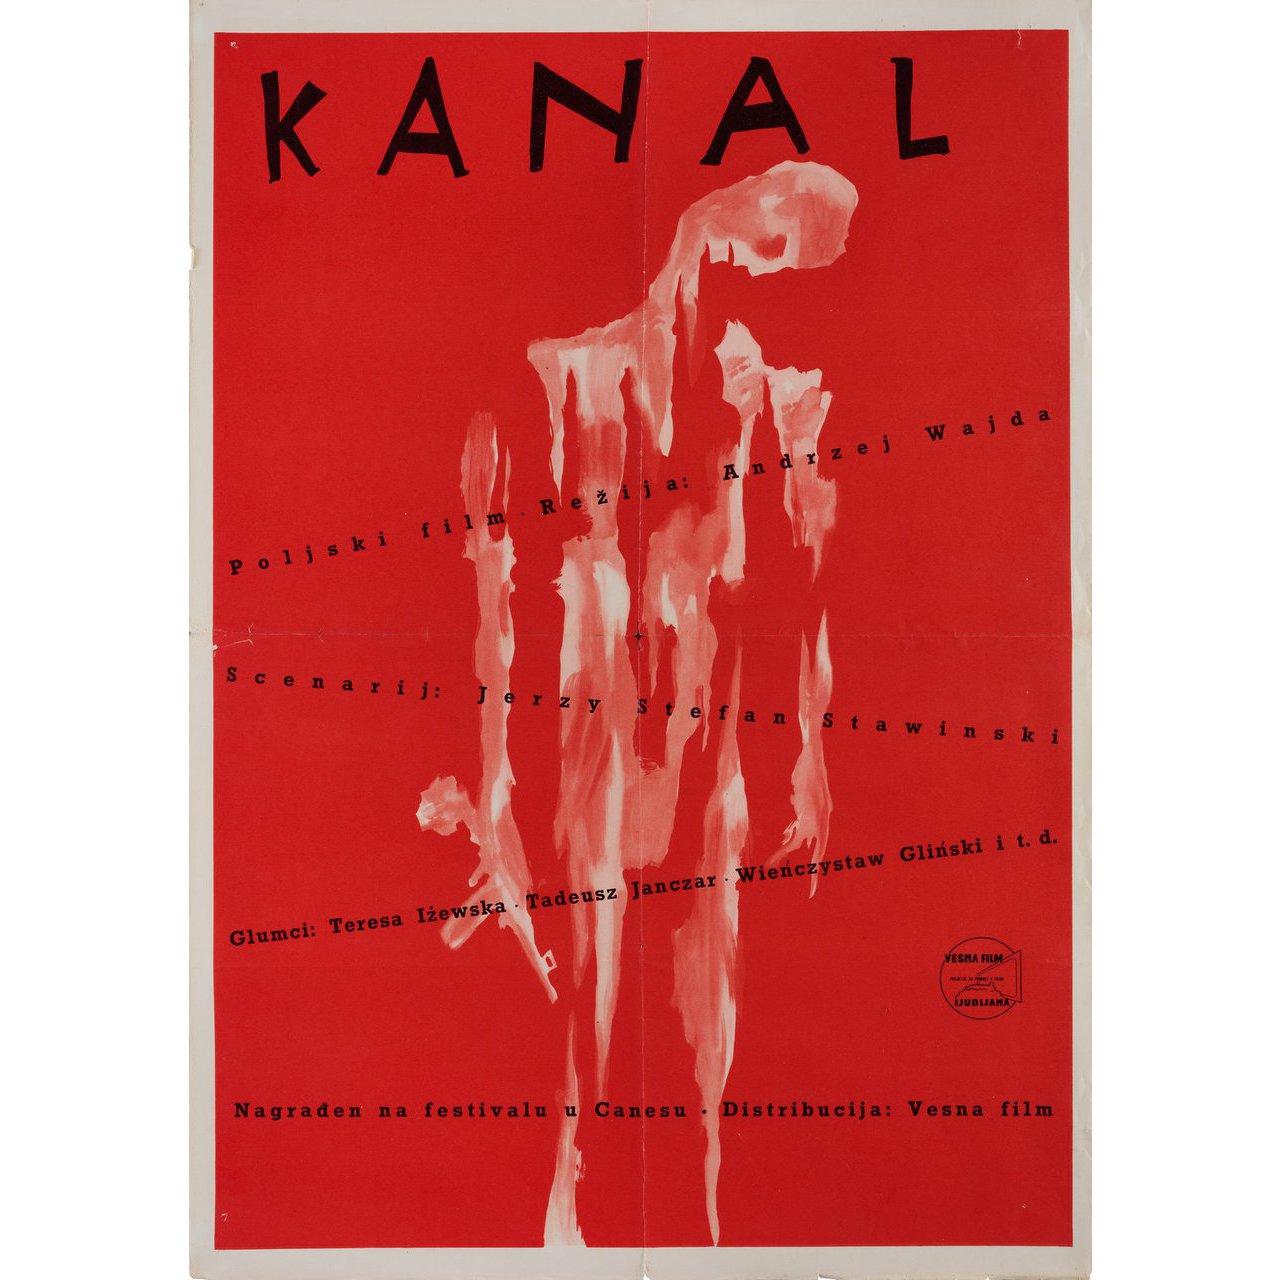 Original 1957 Yugoslav B2 poster by Jan Lenica for the film Kanal (Canal) directed by Andrzej Wajda with Teresa Izewska / Tadeusz Janczar / Wienczyslaw Glinski / Tadeusz Gwiazdowski. Very Good-Fine condition, folded. Many original posters were